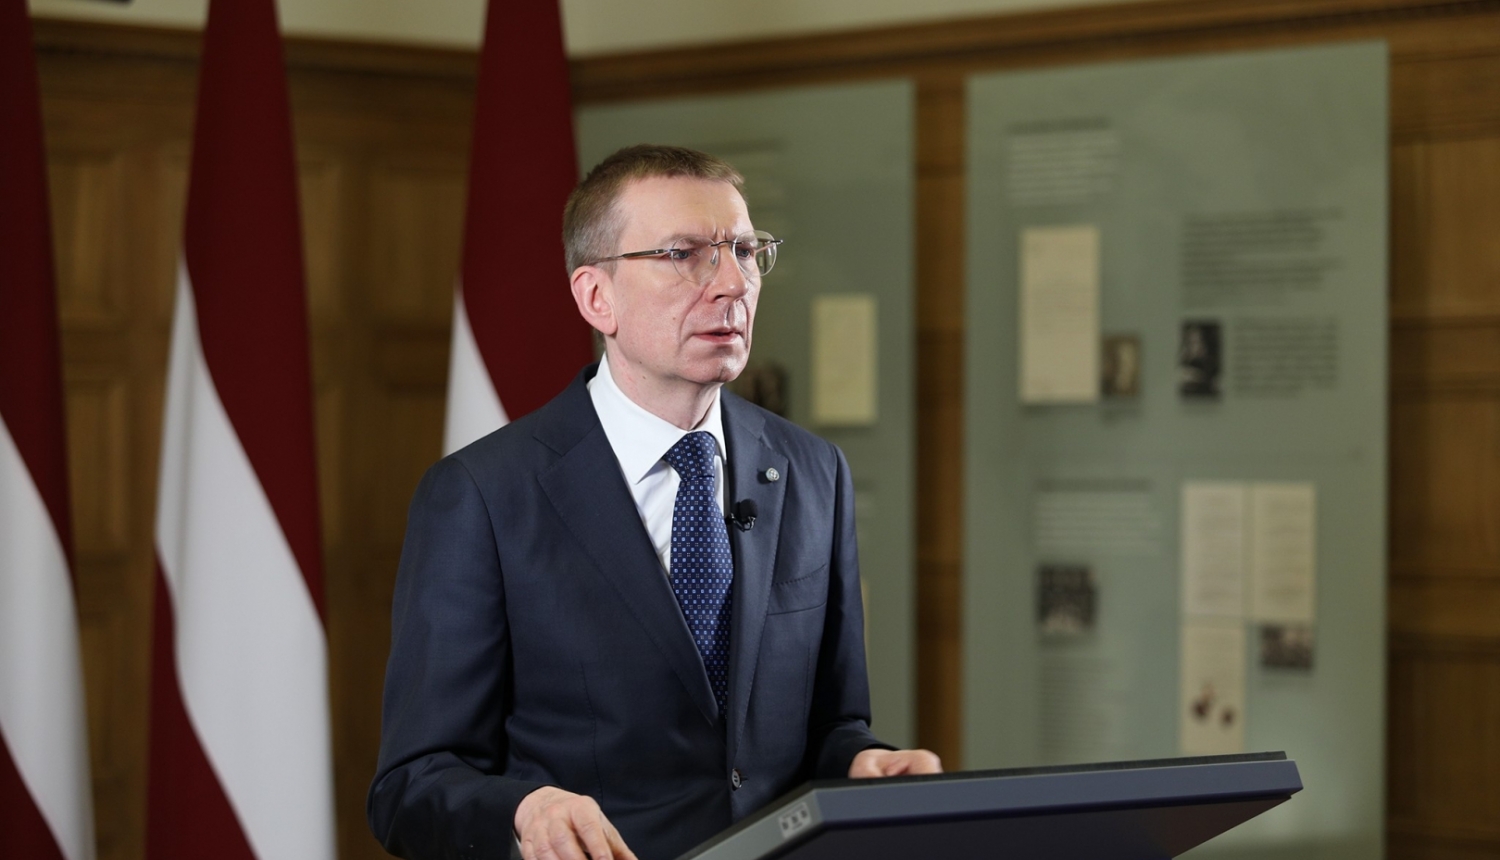 Ārlietu ministra E. Rinkēviča uzruna Saeimas ārpolitikas debatēs 2022. gada 27. janvārī